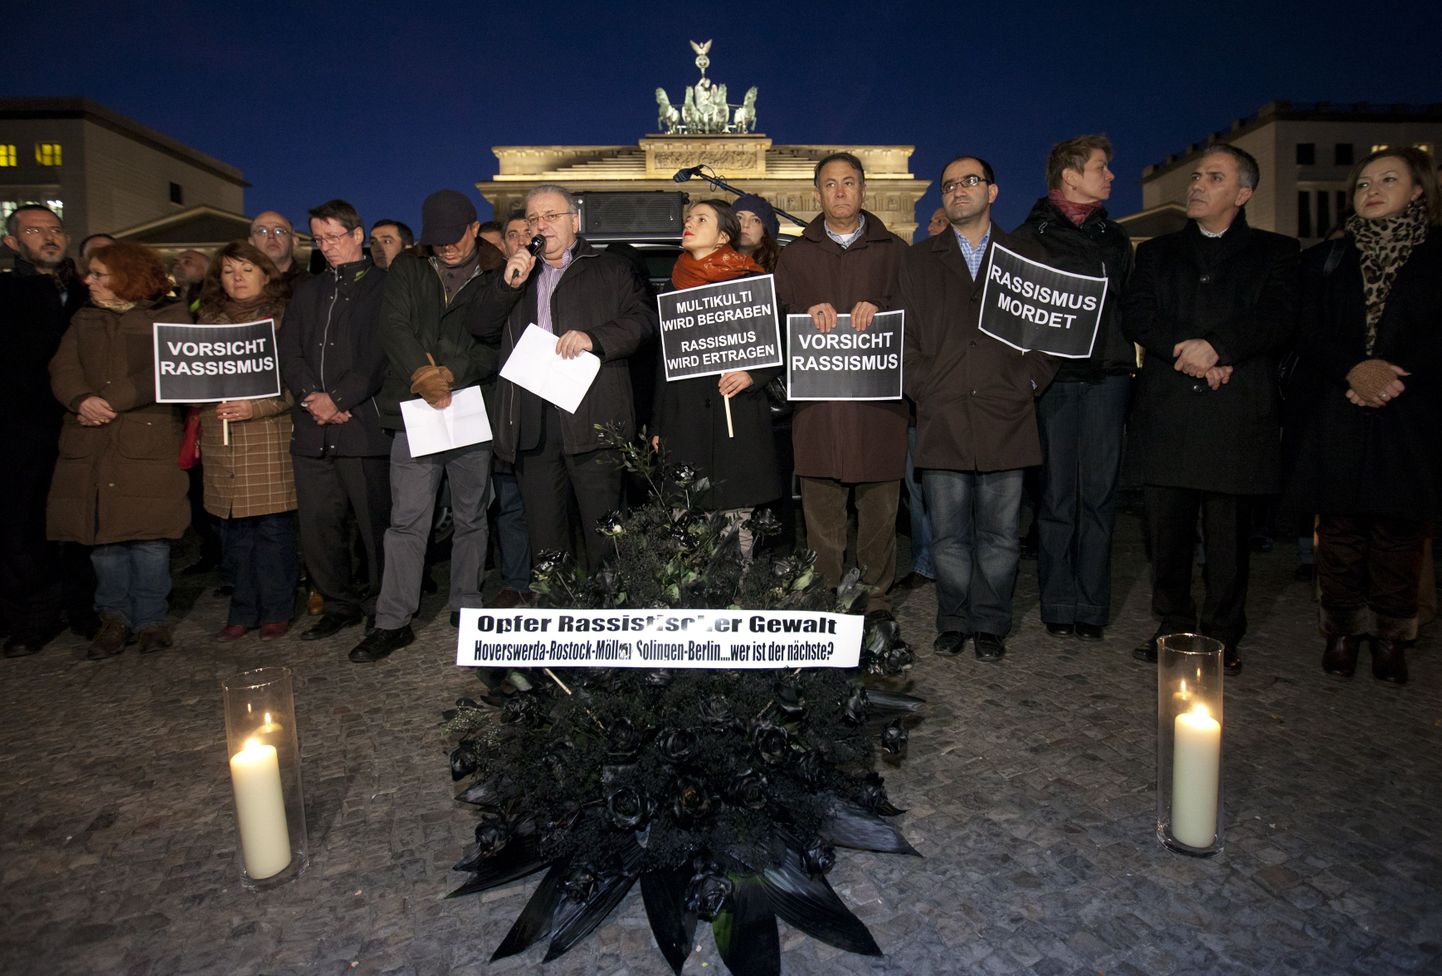 Saksamaal mälestatakse neonatside ohvreid